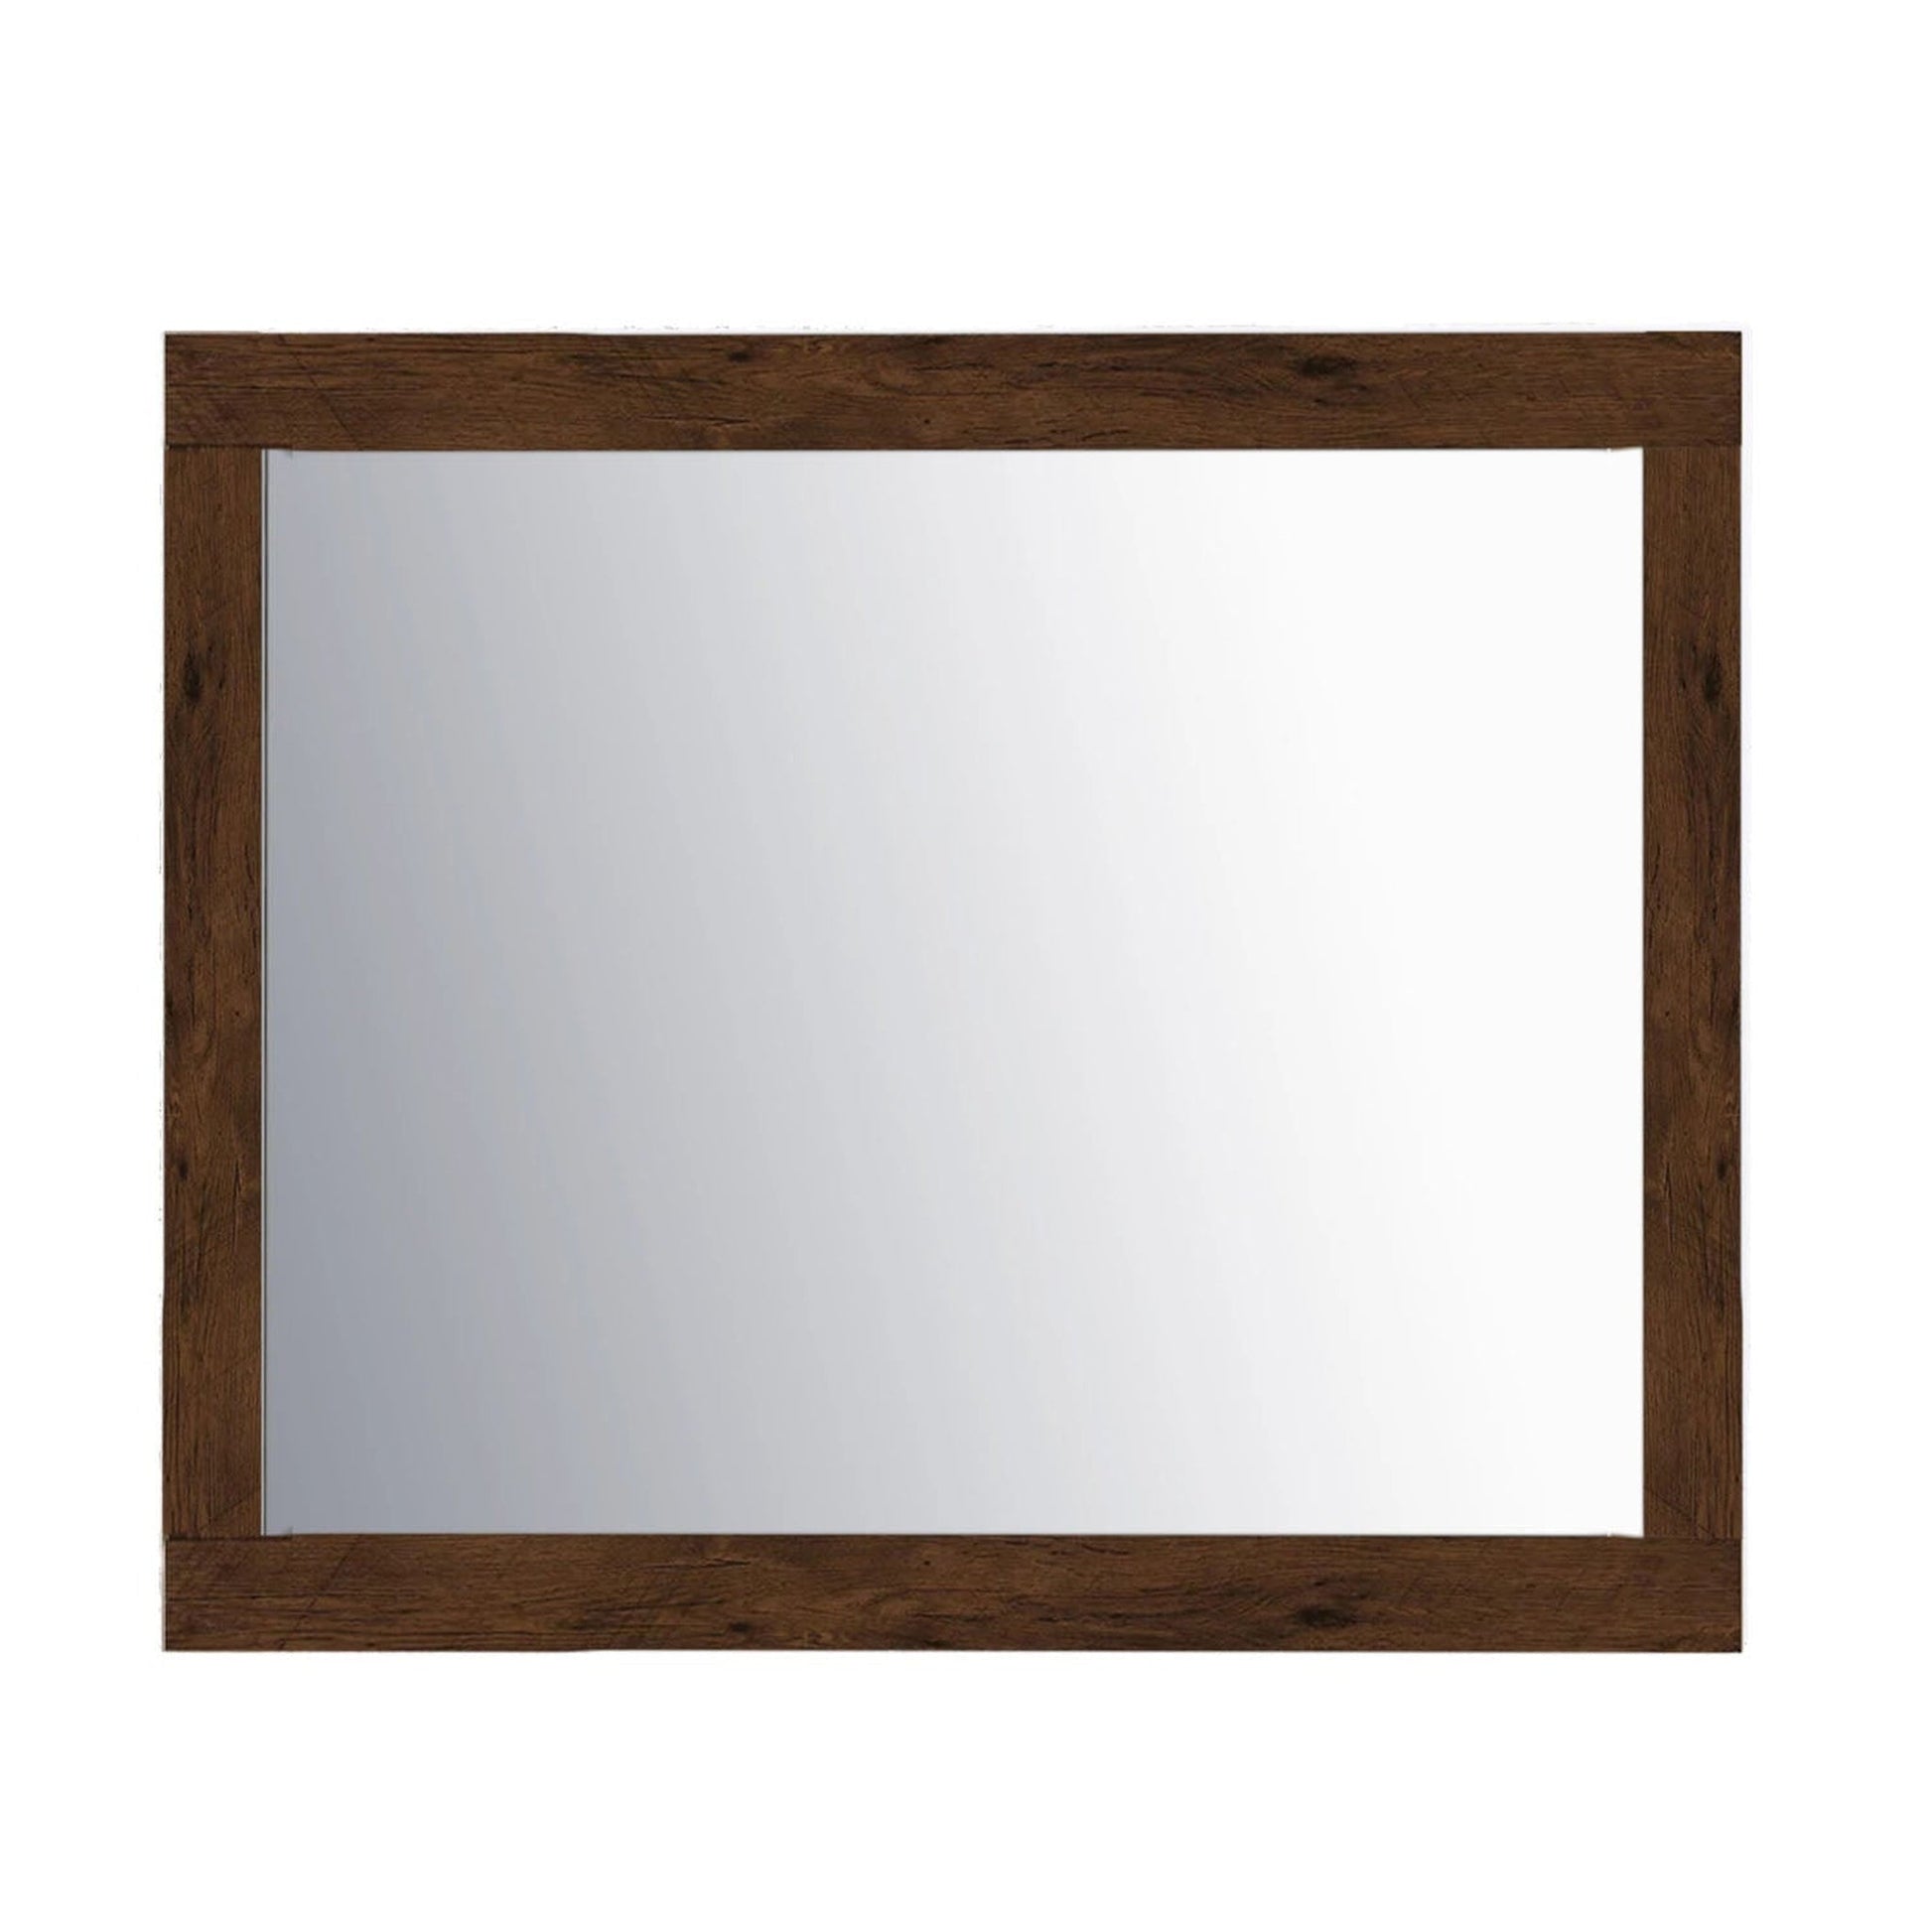 Eviva Sun 24" x 30" Rosewood Framed Bathroom Wall-Mounted Mirror